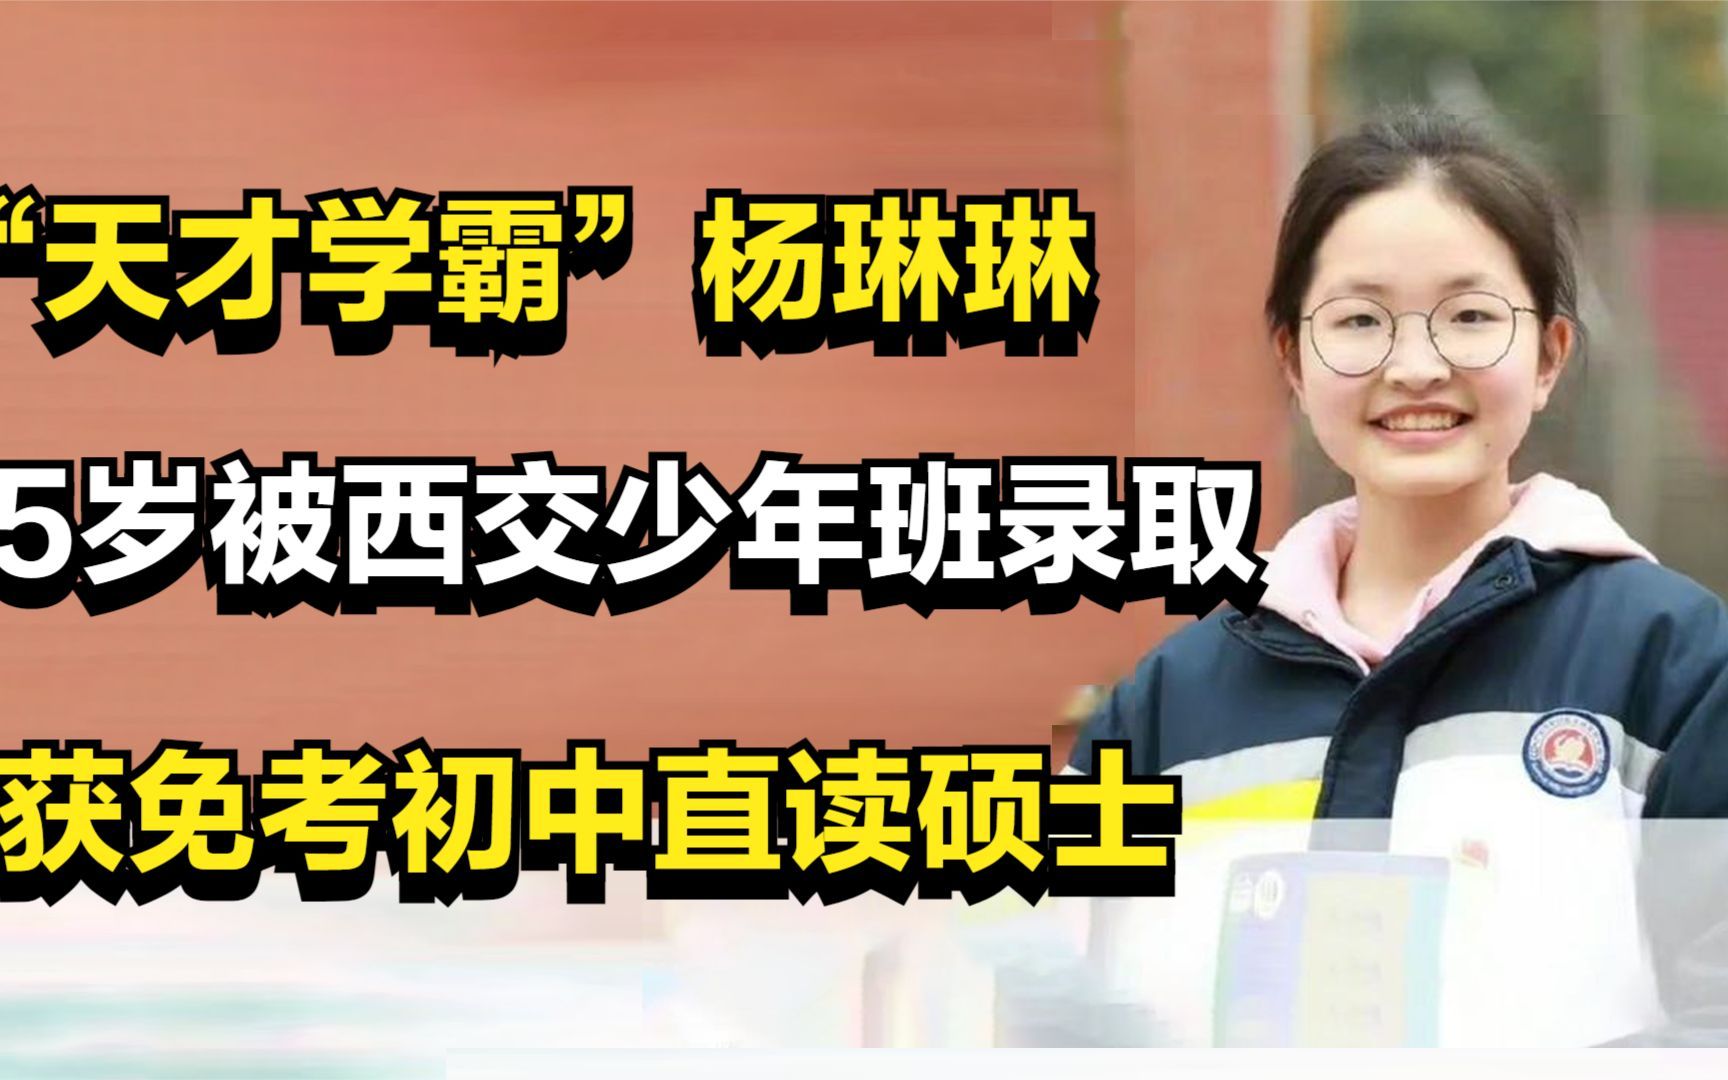 “天才学霸”杨琳琳，15岁被西交少年班录取，获免考初中直读硕士